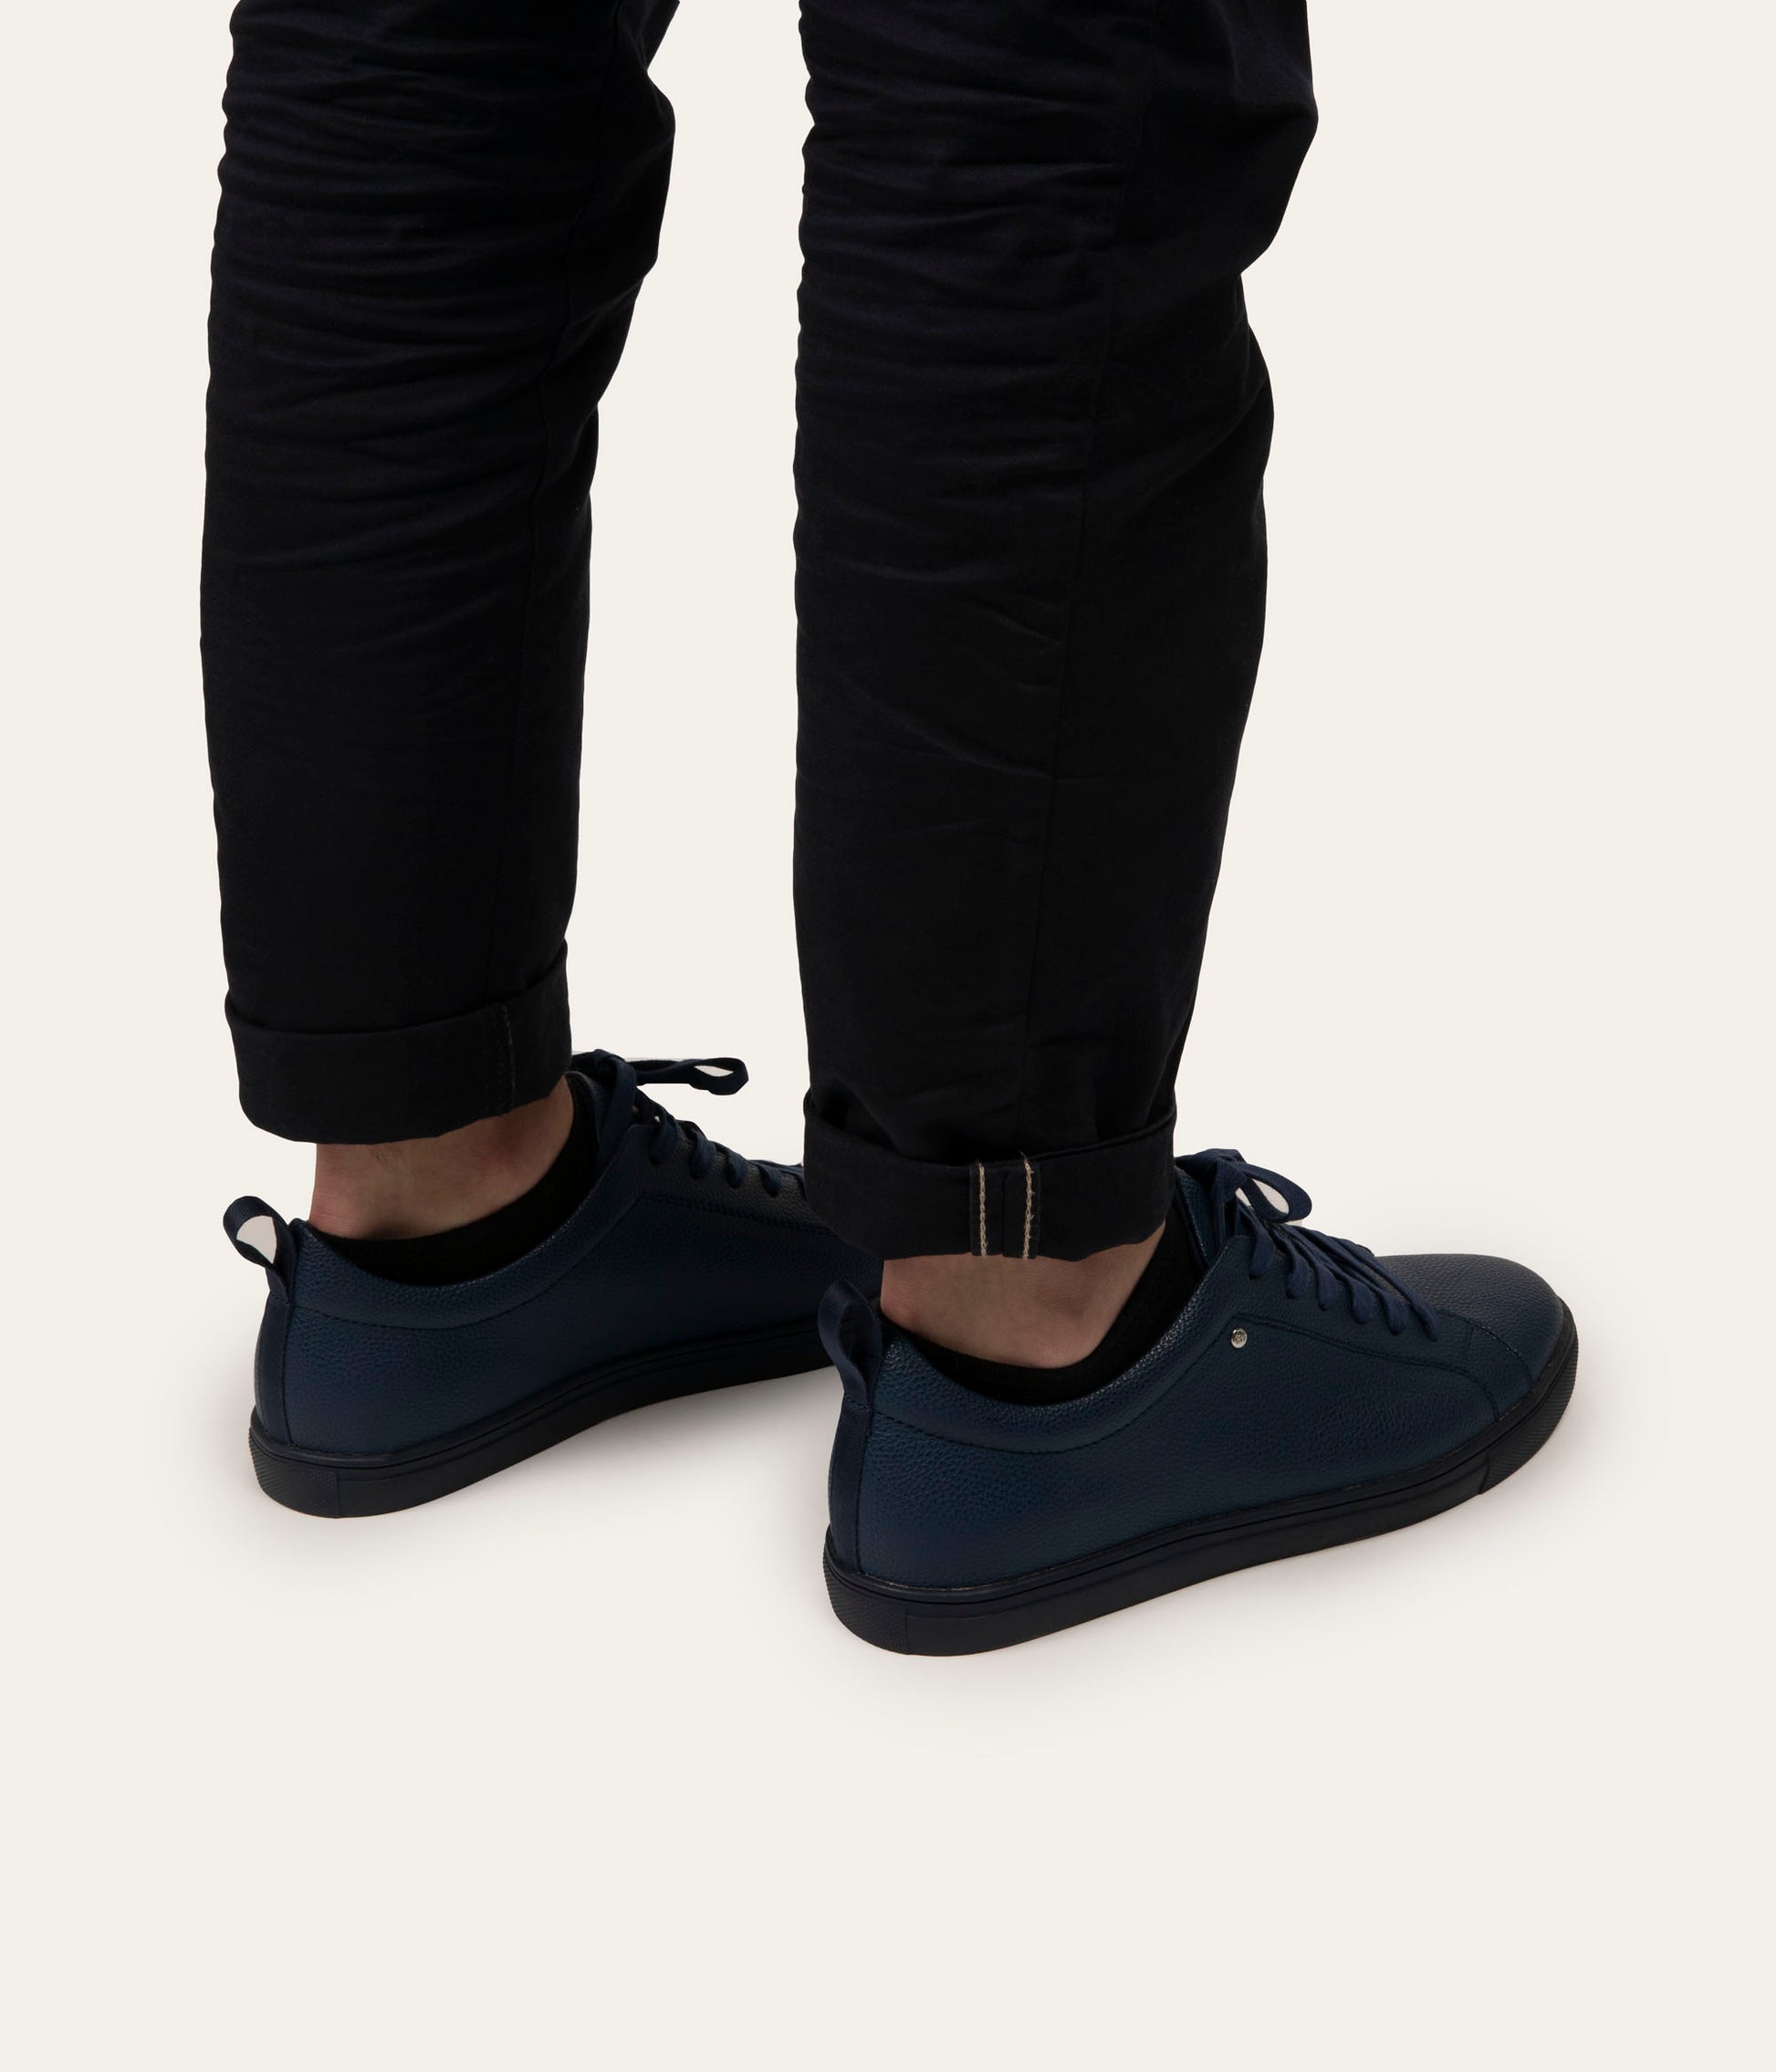 variant:: bleu marin -- yuvi shoe bleu marin